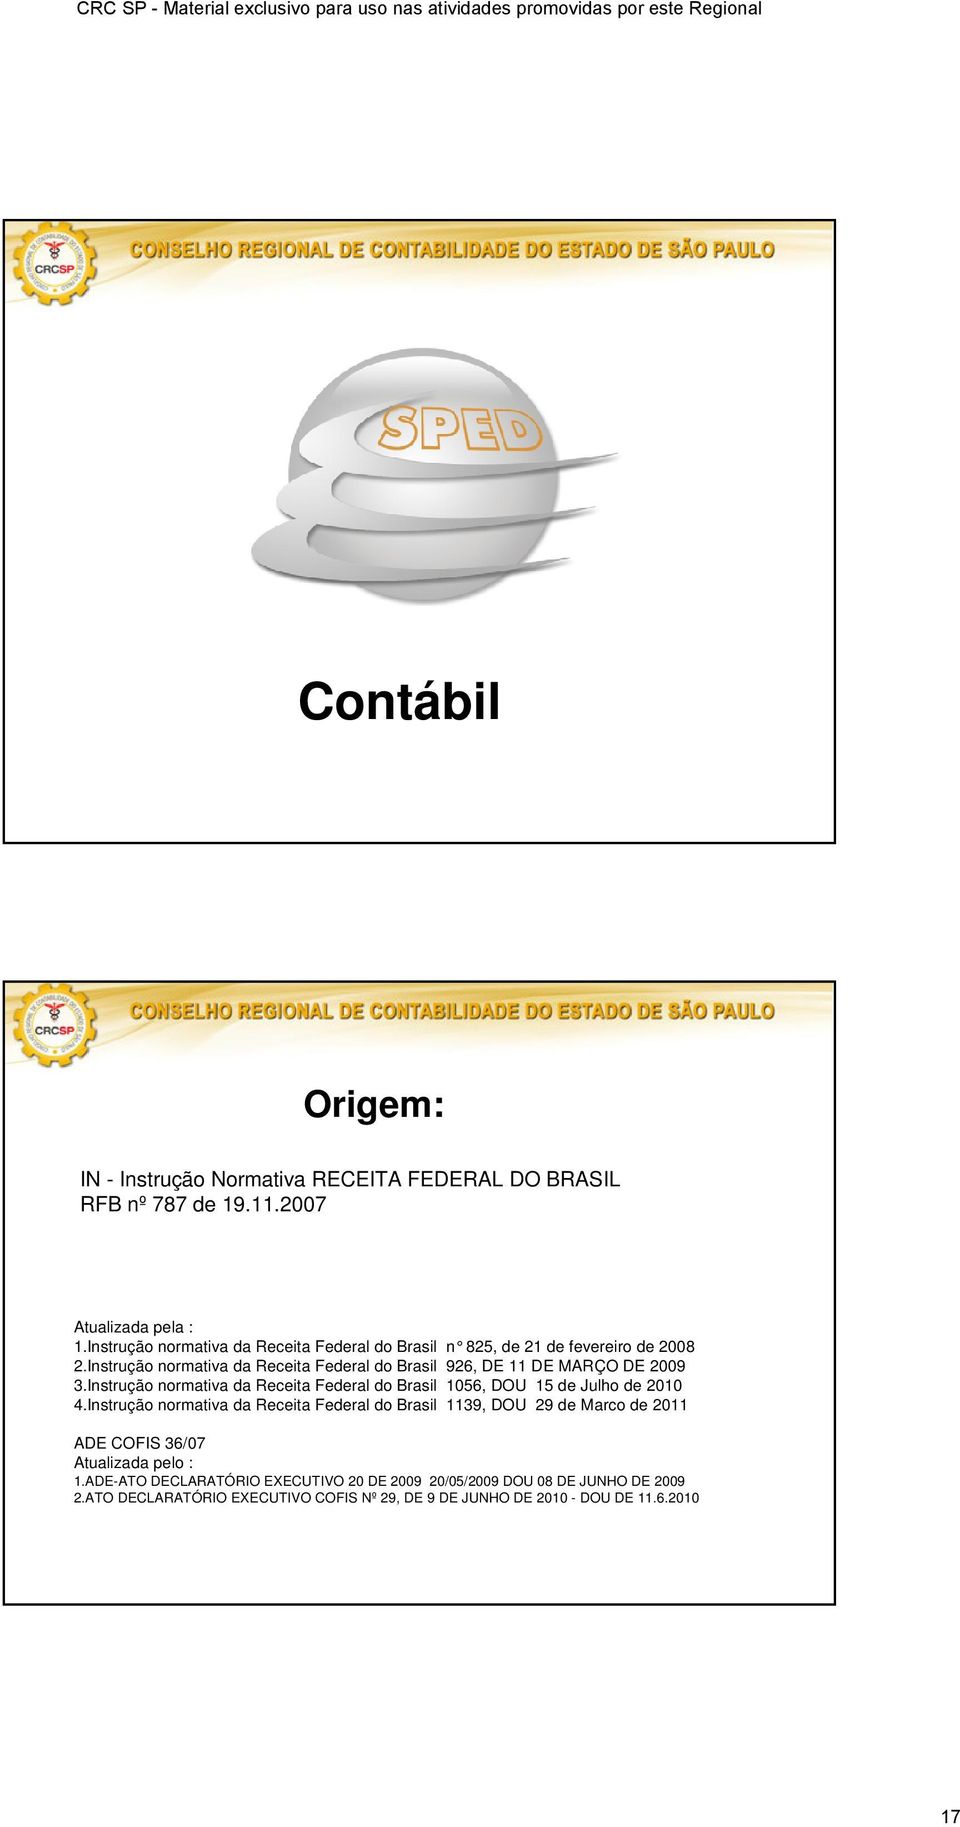 Instrução normativa da Receita Federal do Brasil 926, DE 11 DE MARÇO DE 2009 3.